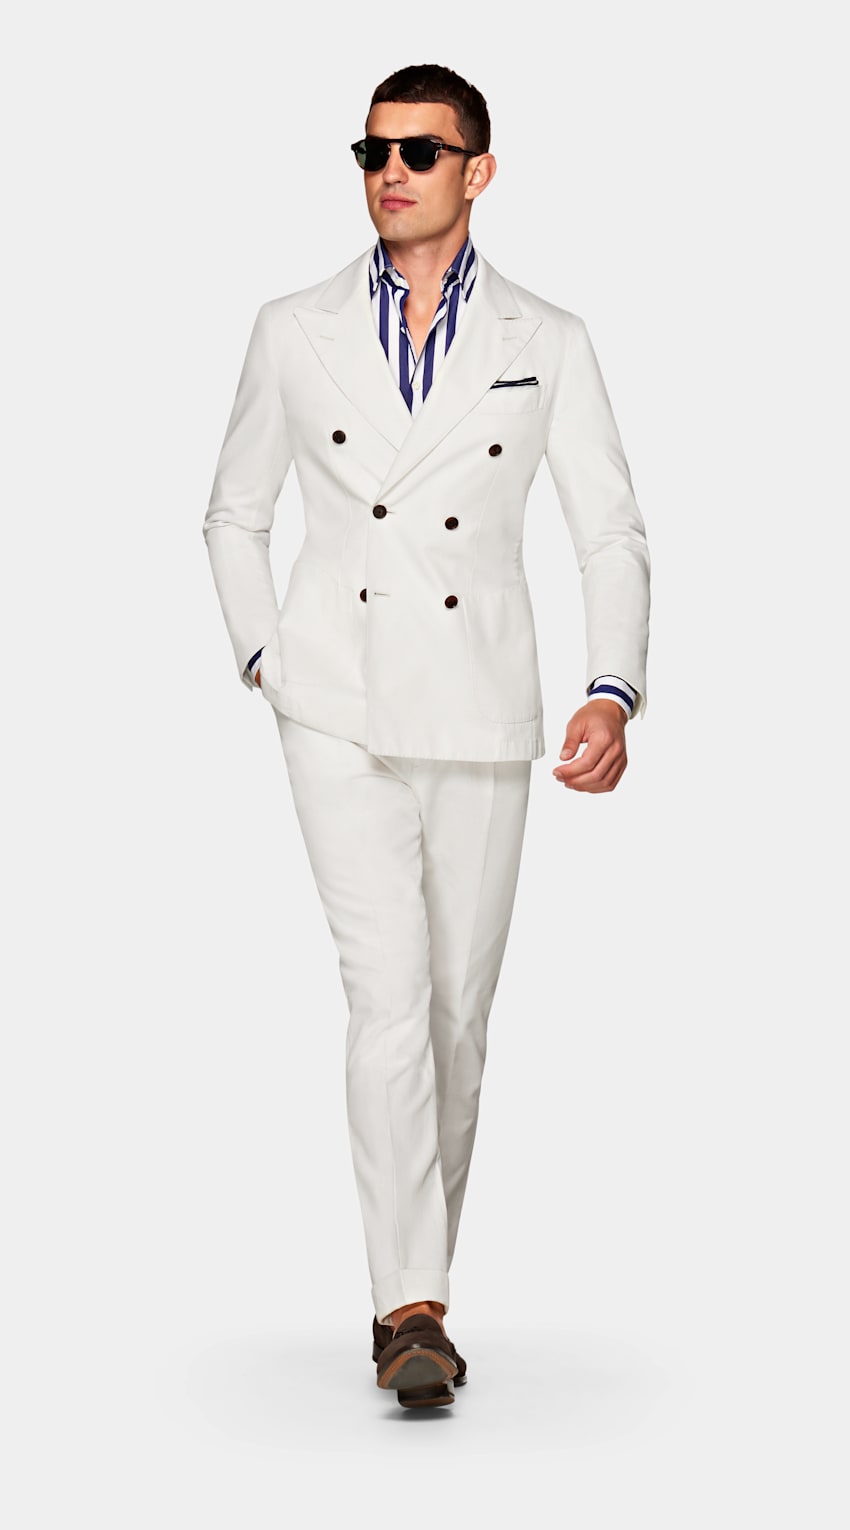 SUITSUPPLY  od Subalpino, Włochy Jort Off White Suit